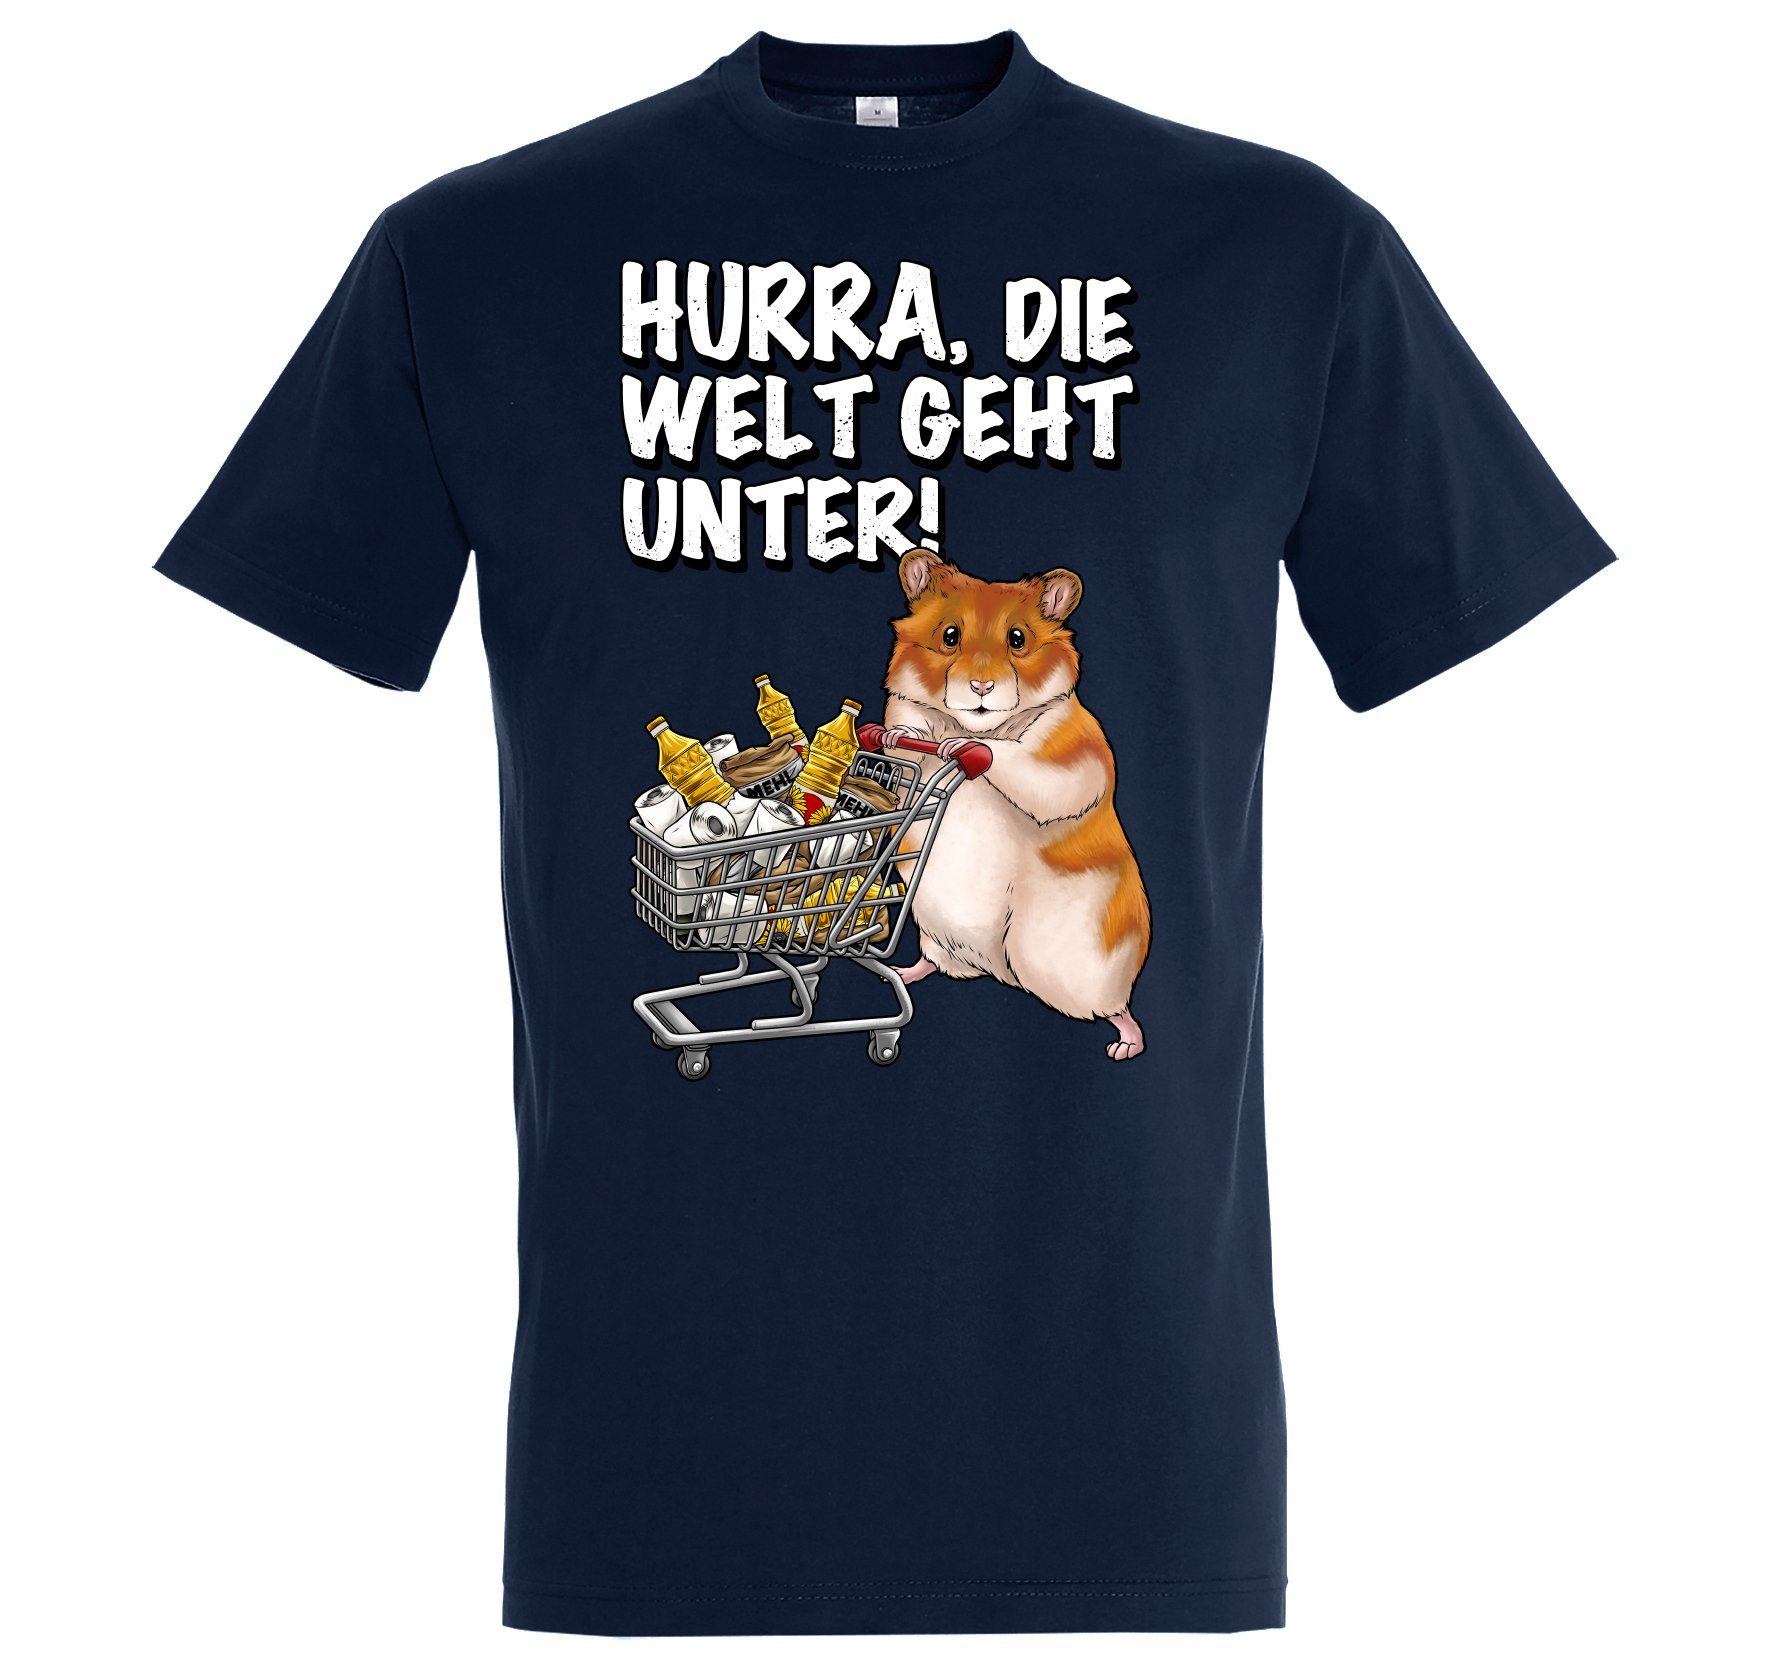 Designz Hamster Herren Navyblau Geht Hurra T-Shirt Print Print-Shirt mit Die Unter Welt Spruch lustigem Youth